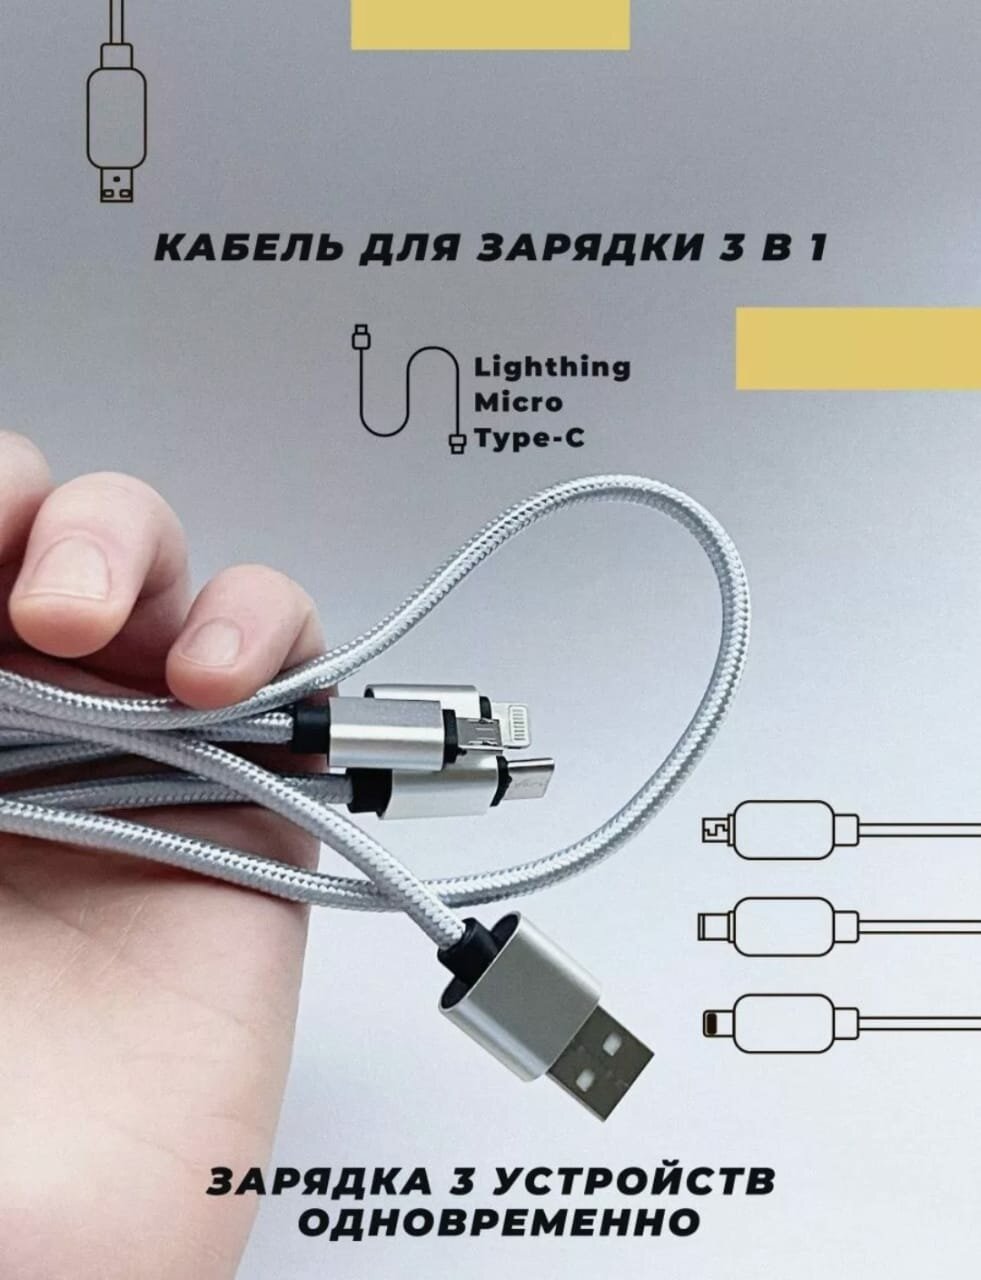 Универсальный кабель зарядки для телефона планшета 3 в1 2.8А USB: Type-c, Micro, Lightning 1.25м